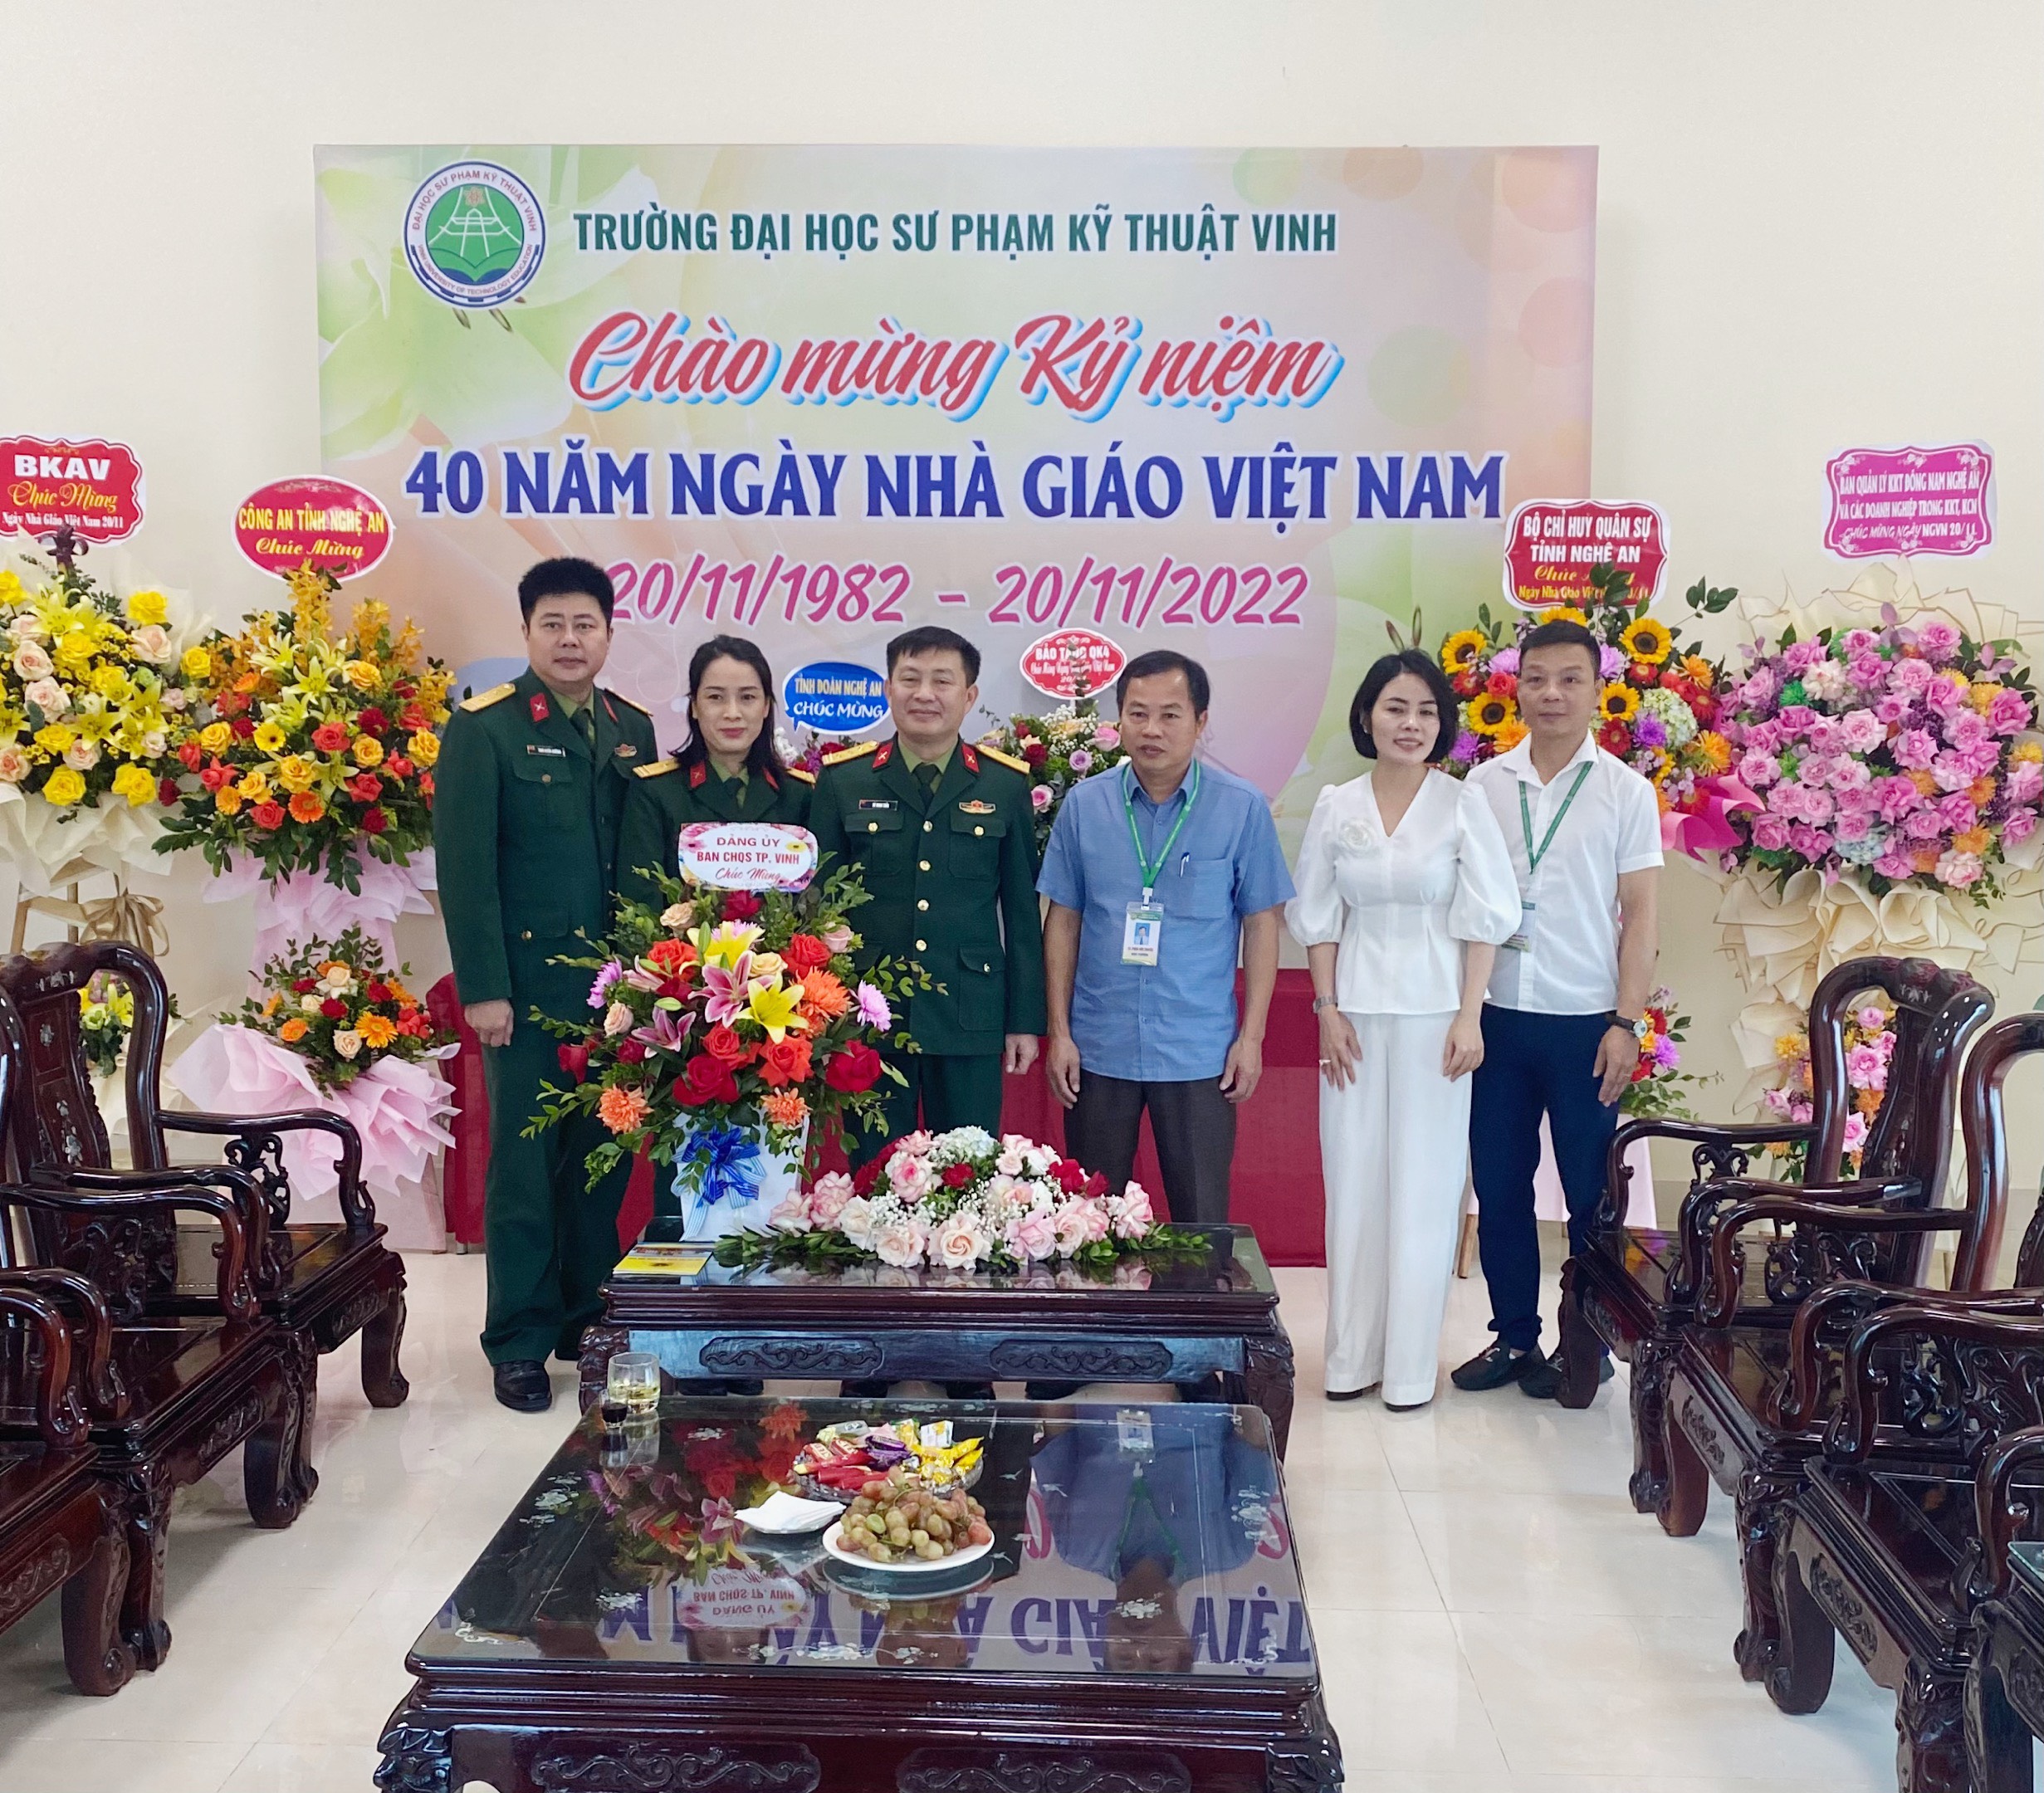 Những hình ảnh đẹp và đầm ấm của các đơn vị, cá nhân chúc mừng Nhà trường nhân dịp Kỷ niệm 40 năm Ngày Nhà giaó Việt Nam 20.11.2021